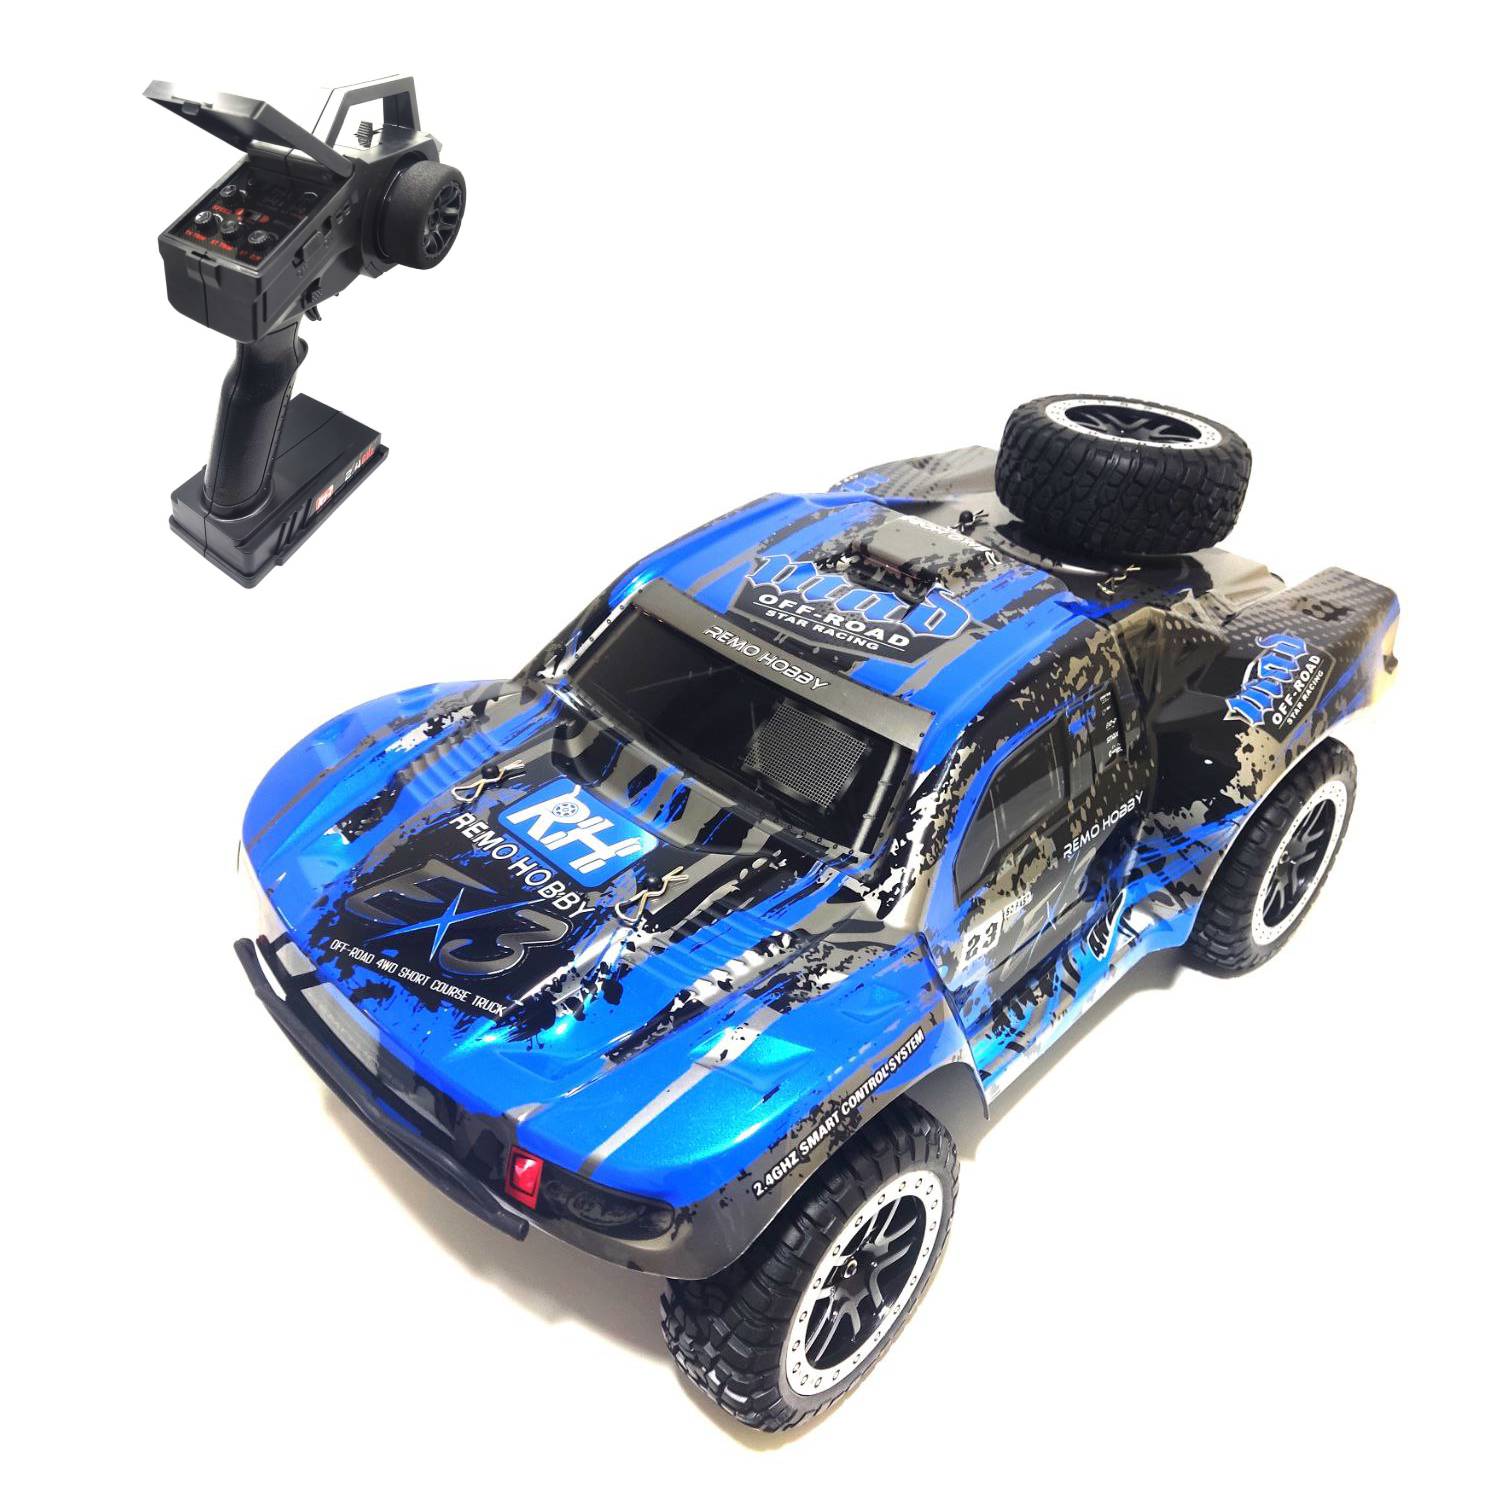 Радиоуправляемый шорт-корс Remo Hobby EX3 UPGRADE 4WD 1 10 24G - RH10EX3TOP-UPG радиоуправляемый шорт корс remo hobby rh1022 4wd rtr масштаб 1 10 2 4g rh1022 blue